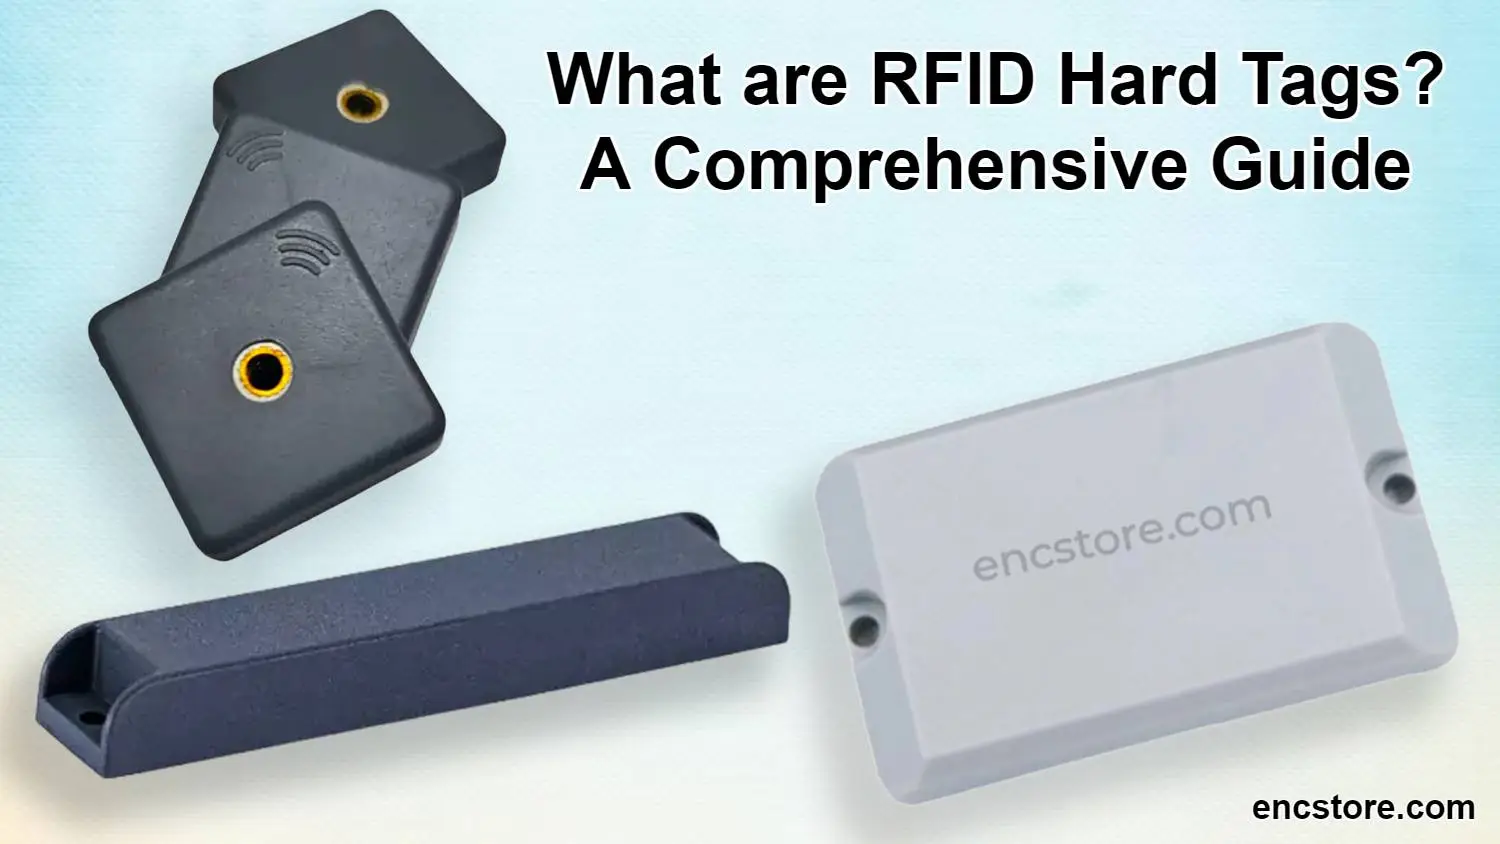 RFID Hard Tags